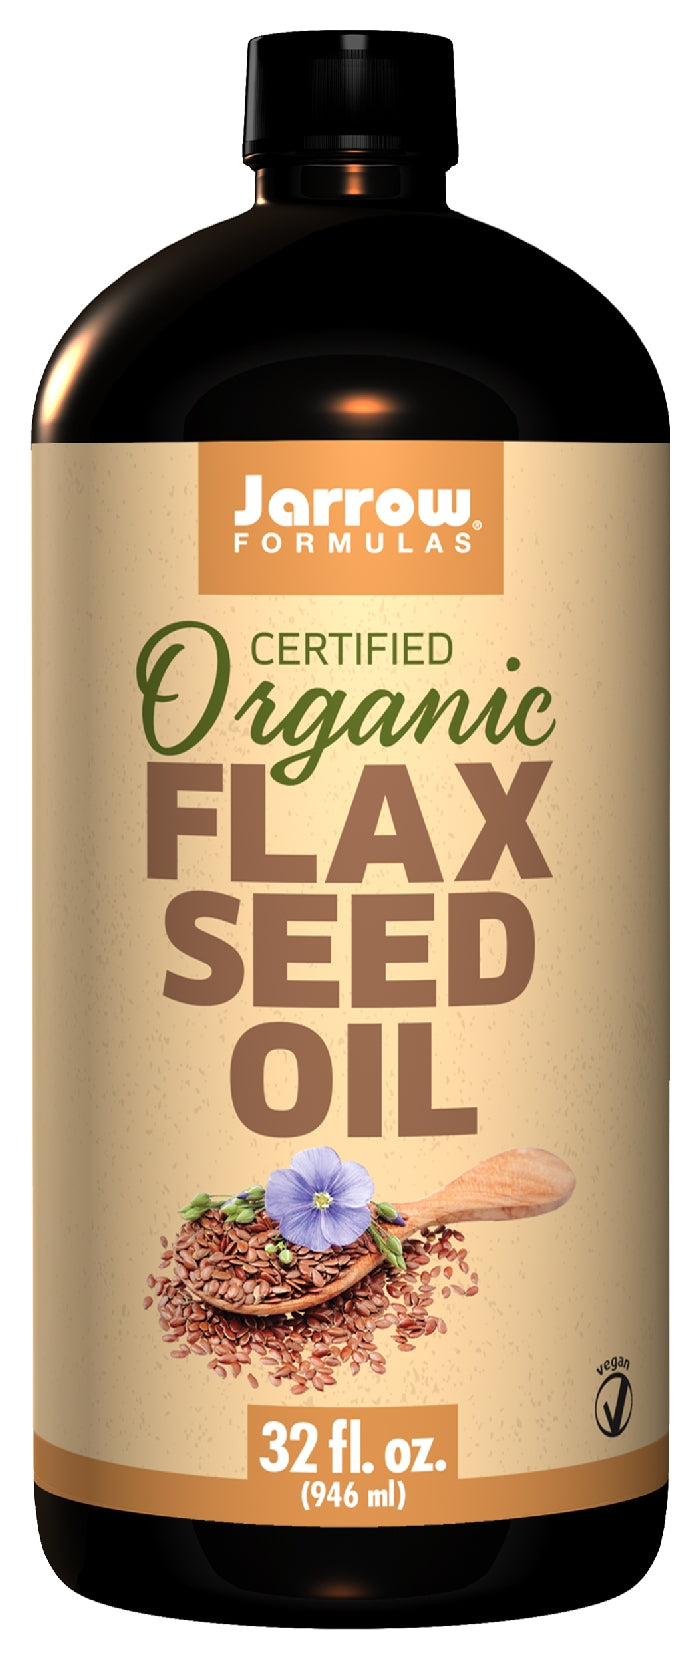 Certified Organic Flax Seed Oil 32 fl oz (946 ml)